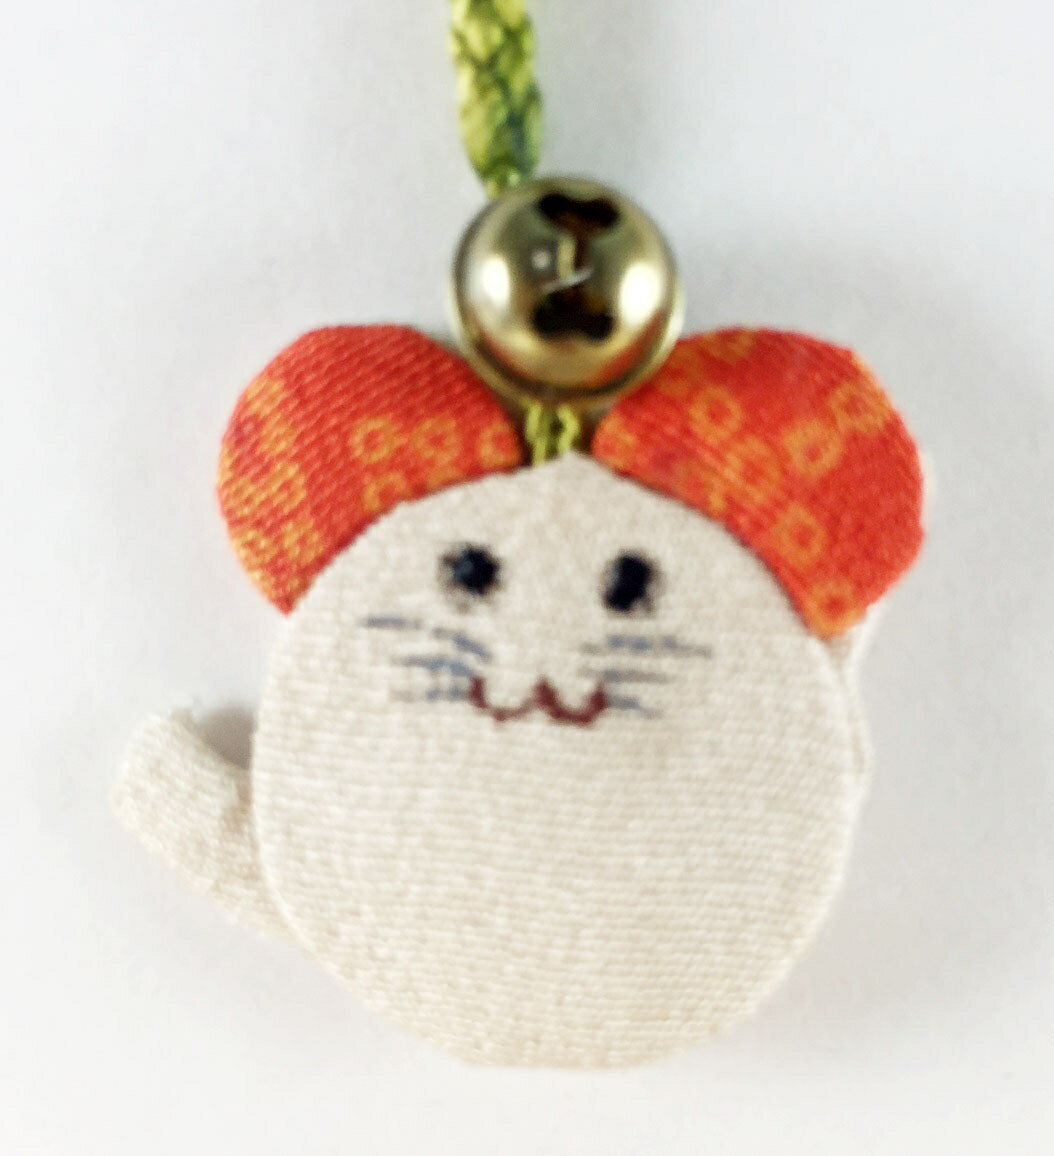 【震撼精品百貨】日本手機吊飾 和風布料材質-老鼠造型-白色 震撼日式精品百貨